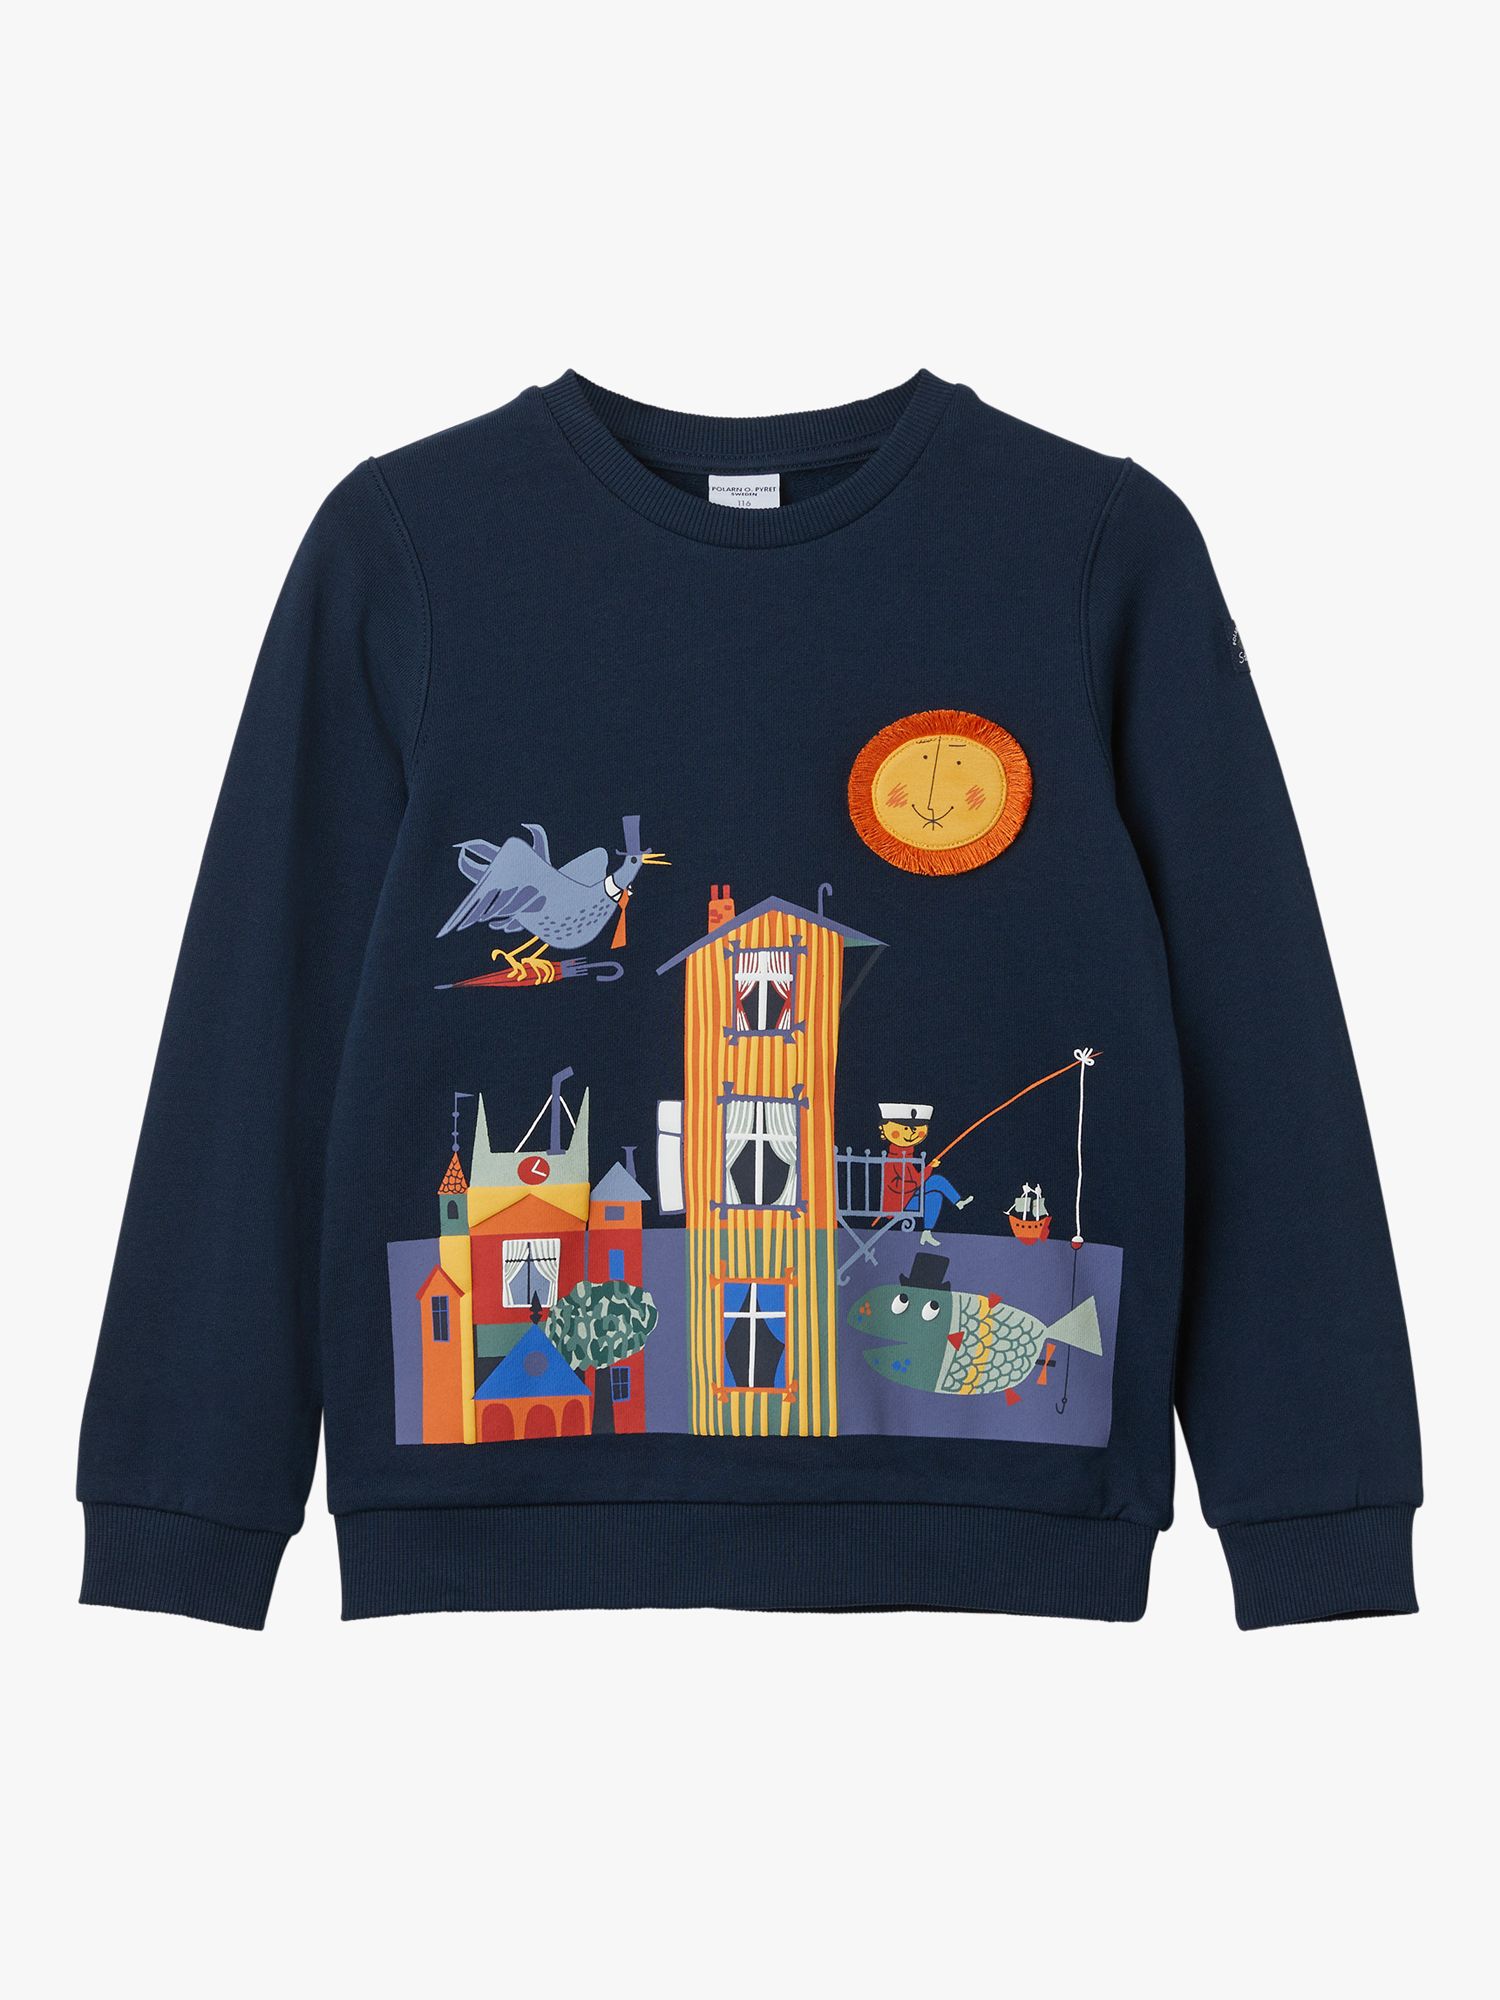 Partners Sweatshirt, Blue & John Town at Organic Pyret Lewis Cotton Kids\' O. Print Polarn Scandi